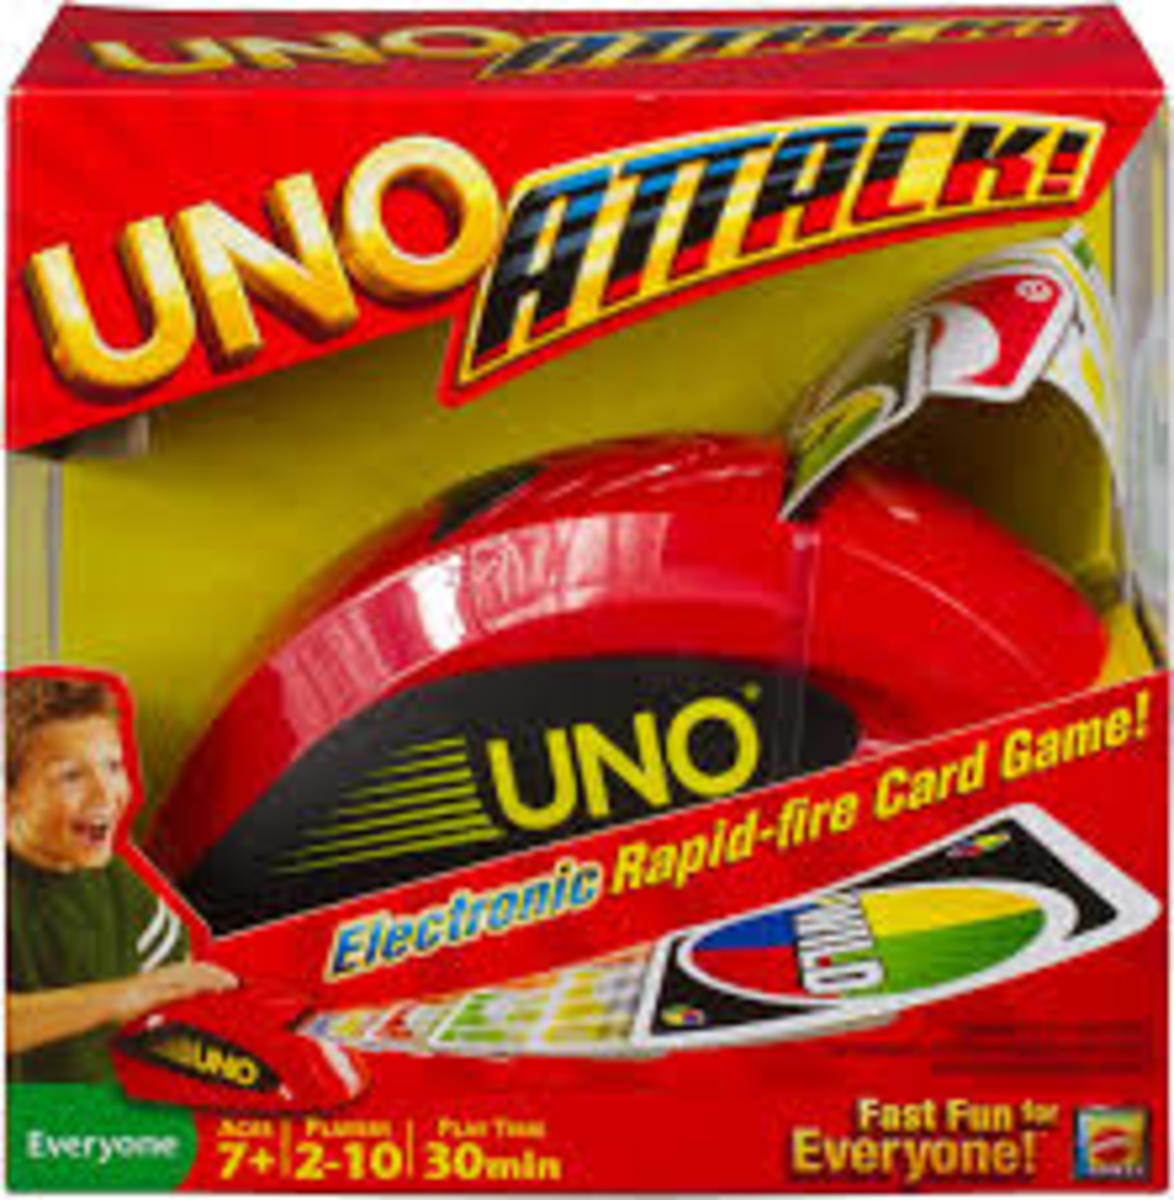 Uno Attack Cards